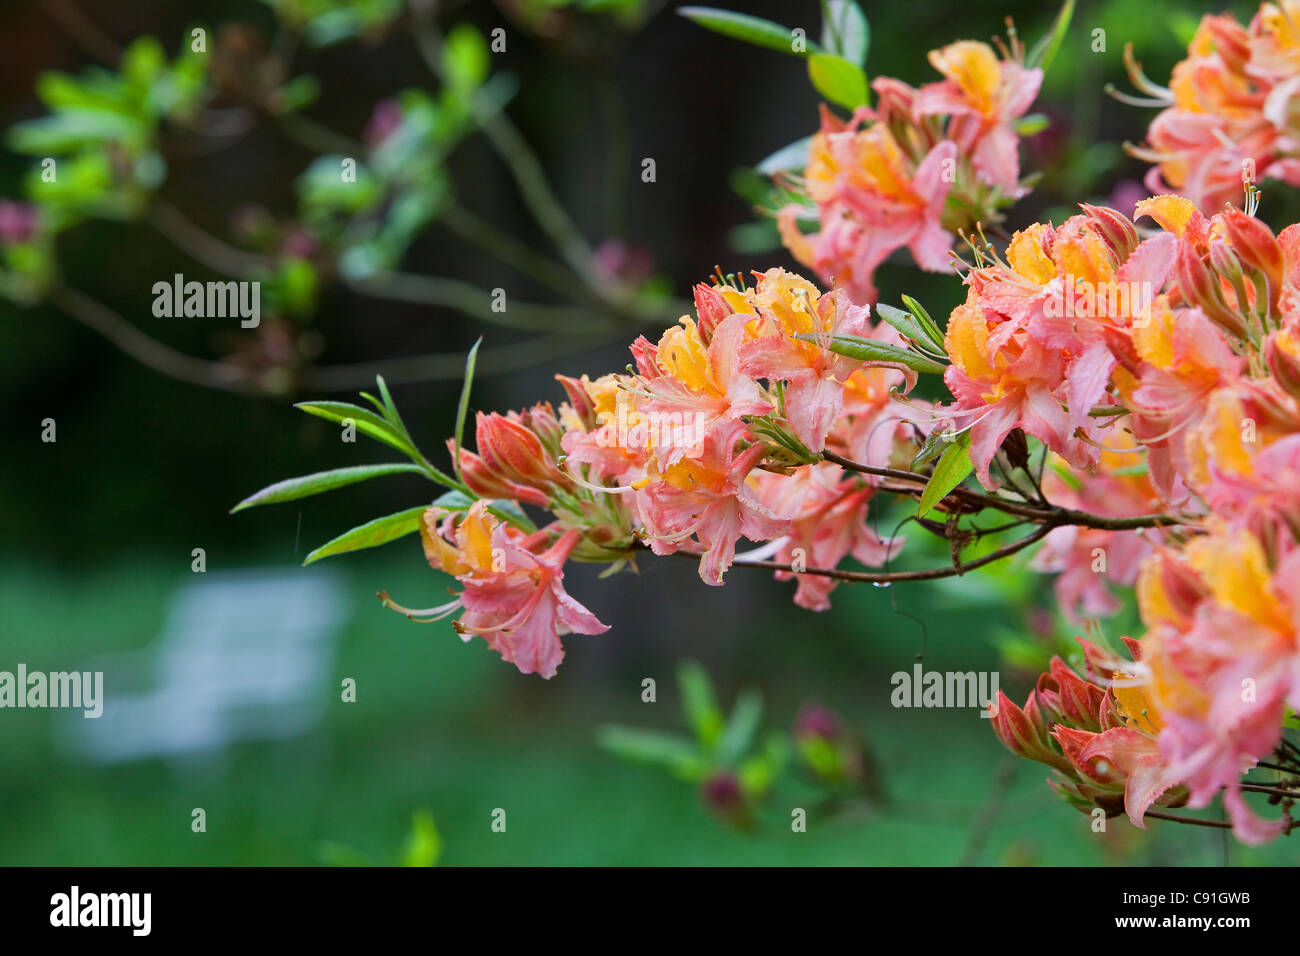 Flowering azaleas in full bloom in Breidings garden, Soltau, Lower Sayony, Germany Stock Photo